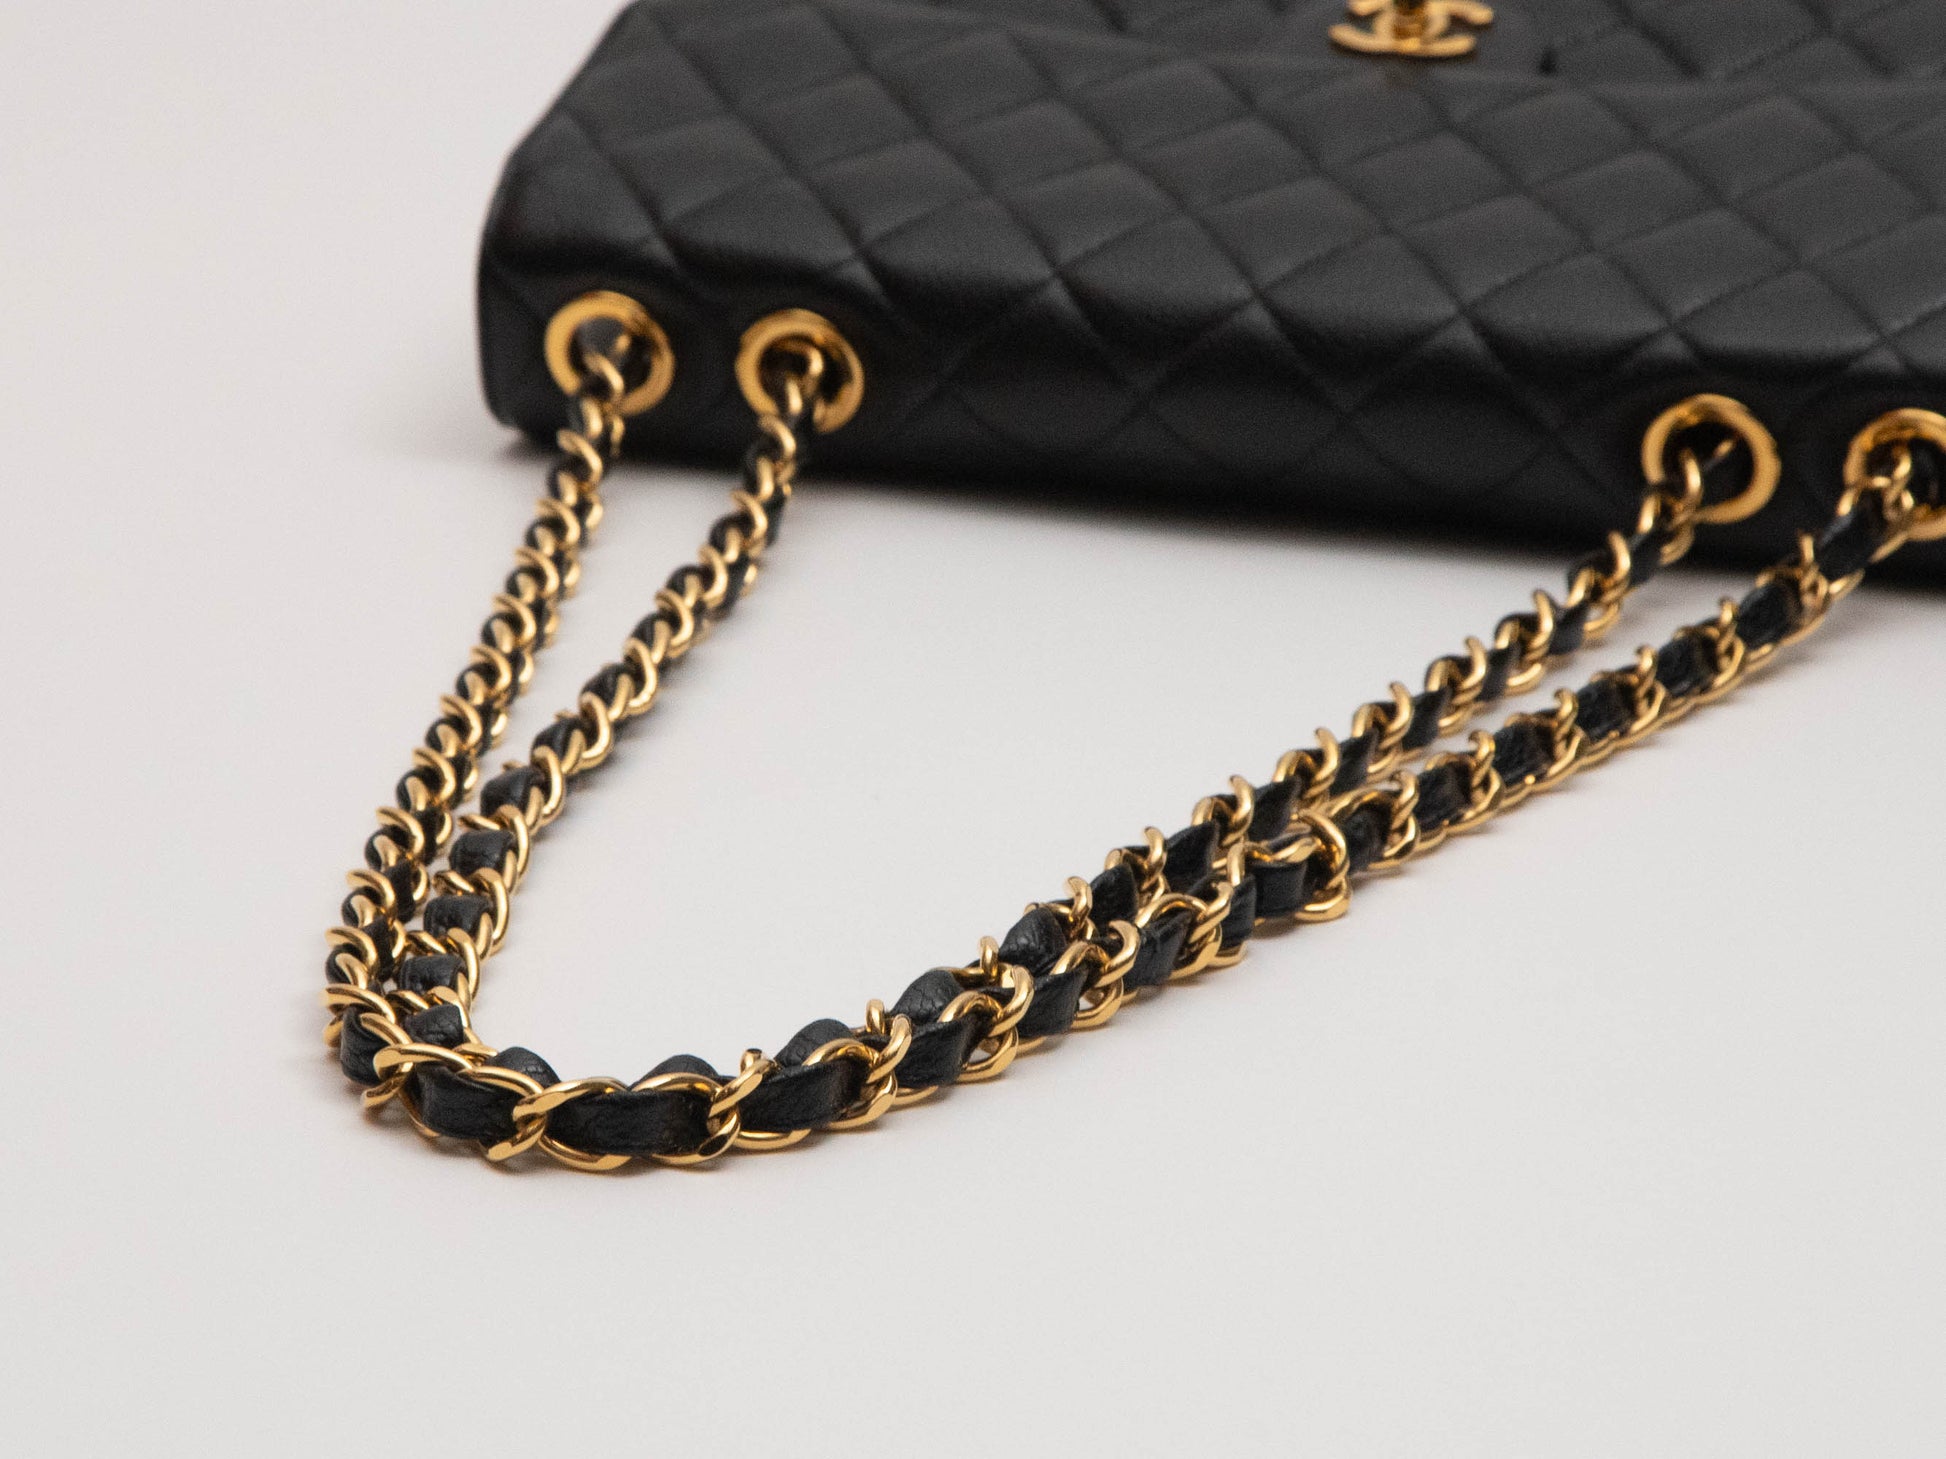 CHANEL Chanel Caviar Skin Deca Coco Mark Mini Pouch Accessory Case